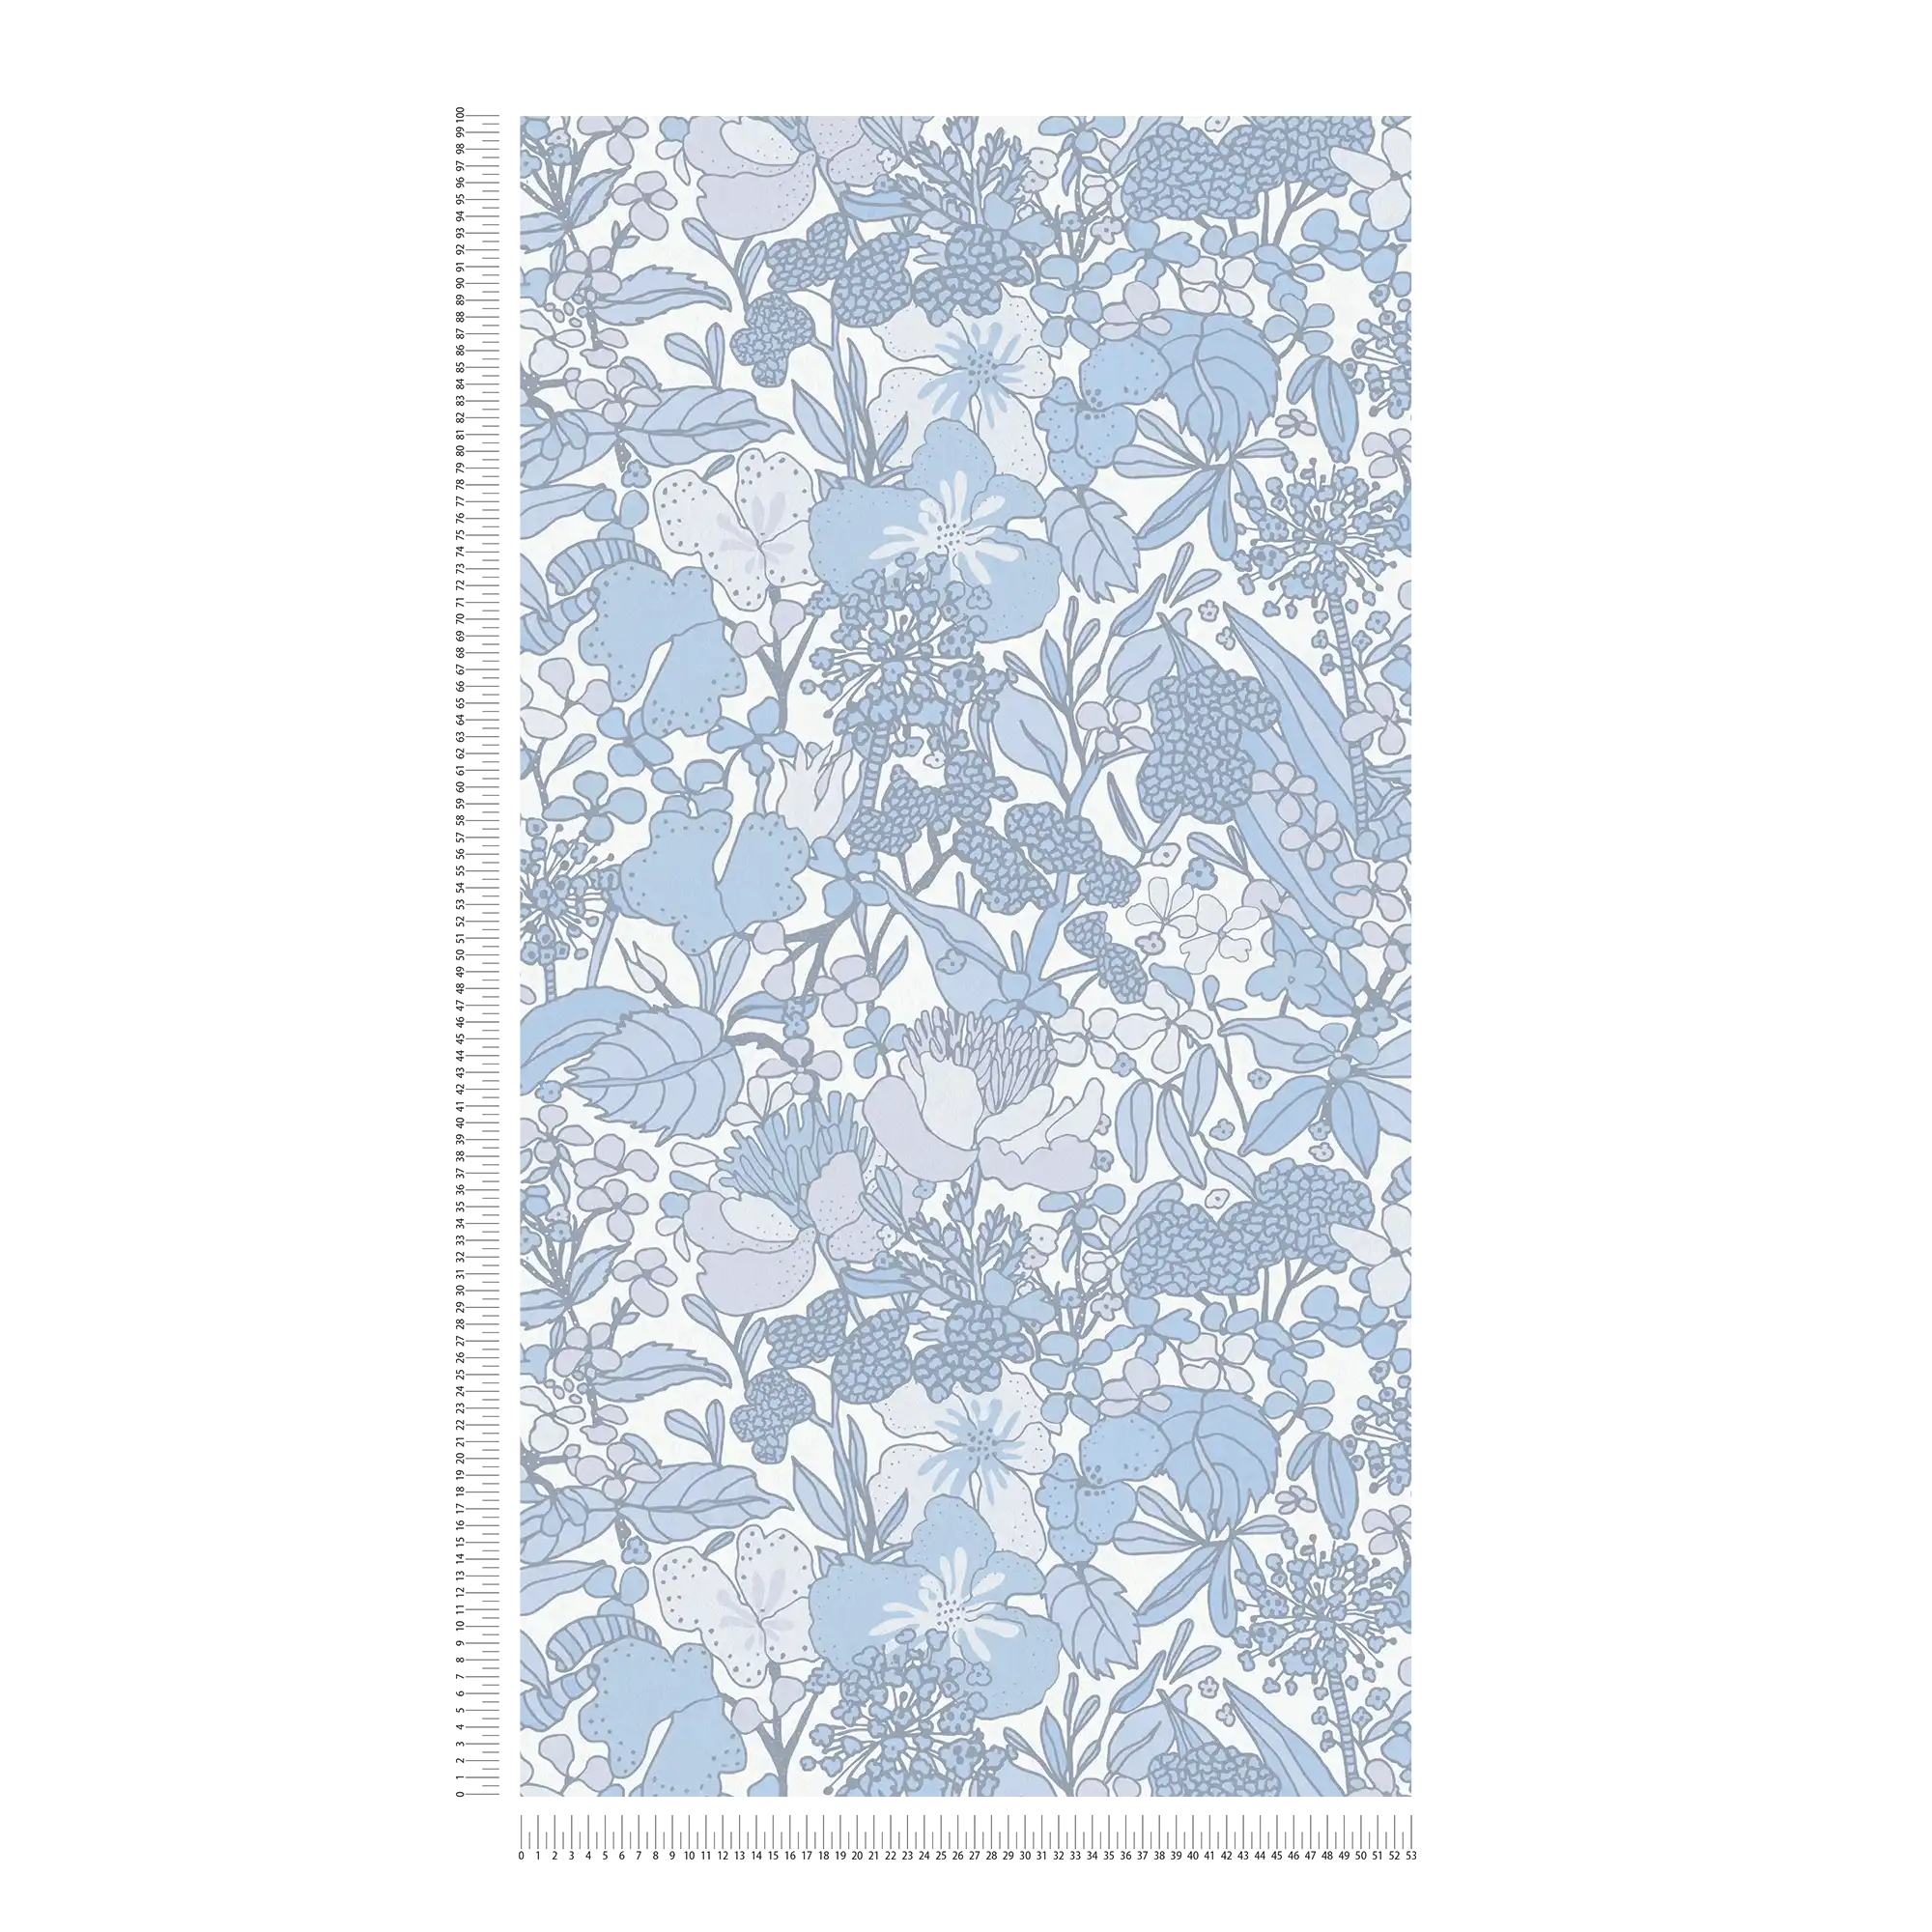             Behang Blauw & Wit met 70s Retro Bloemenpatroon - Grijs, Blauw, Wit
        